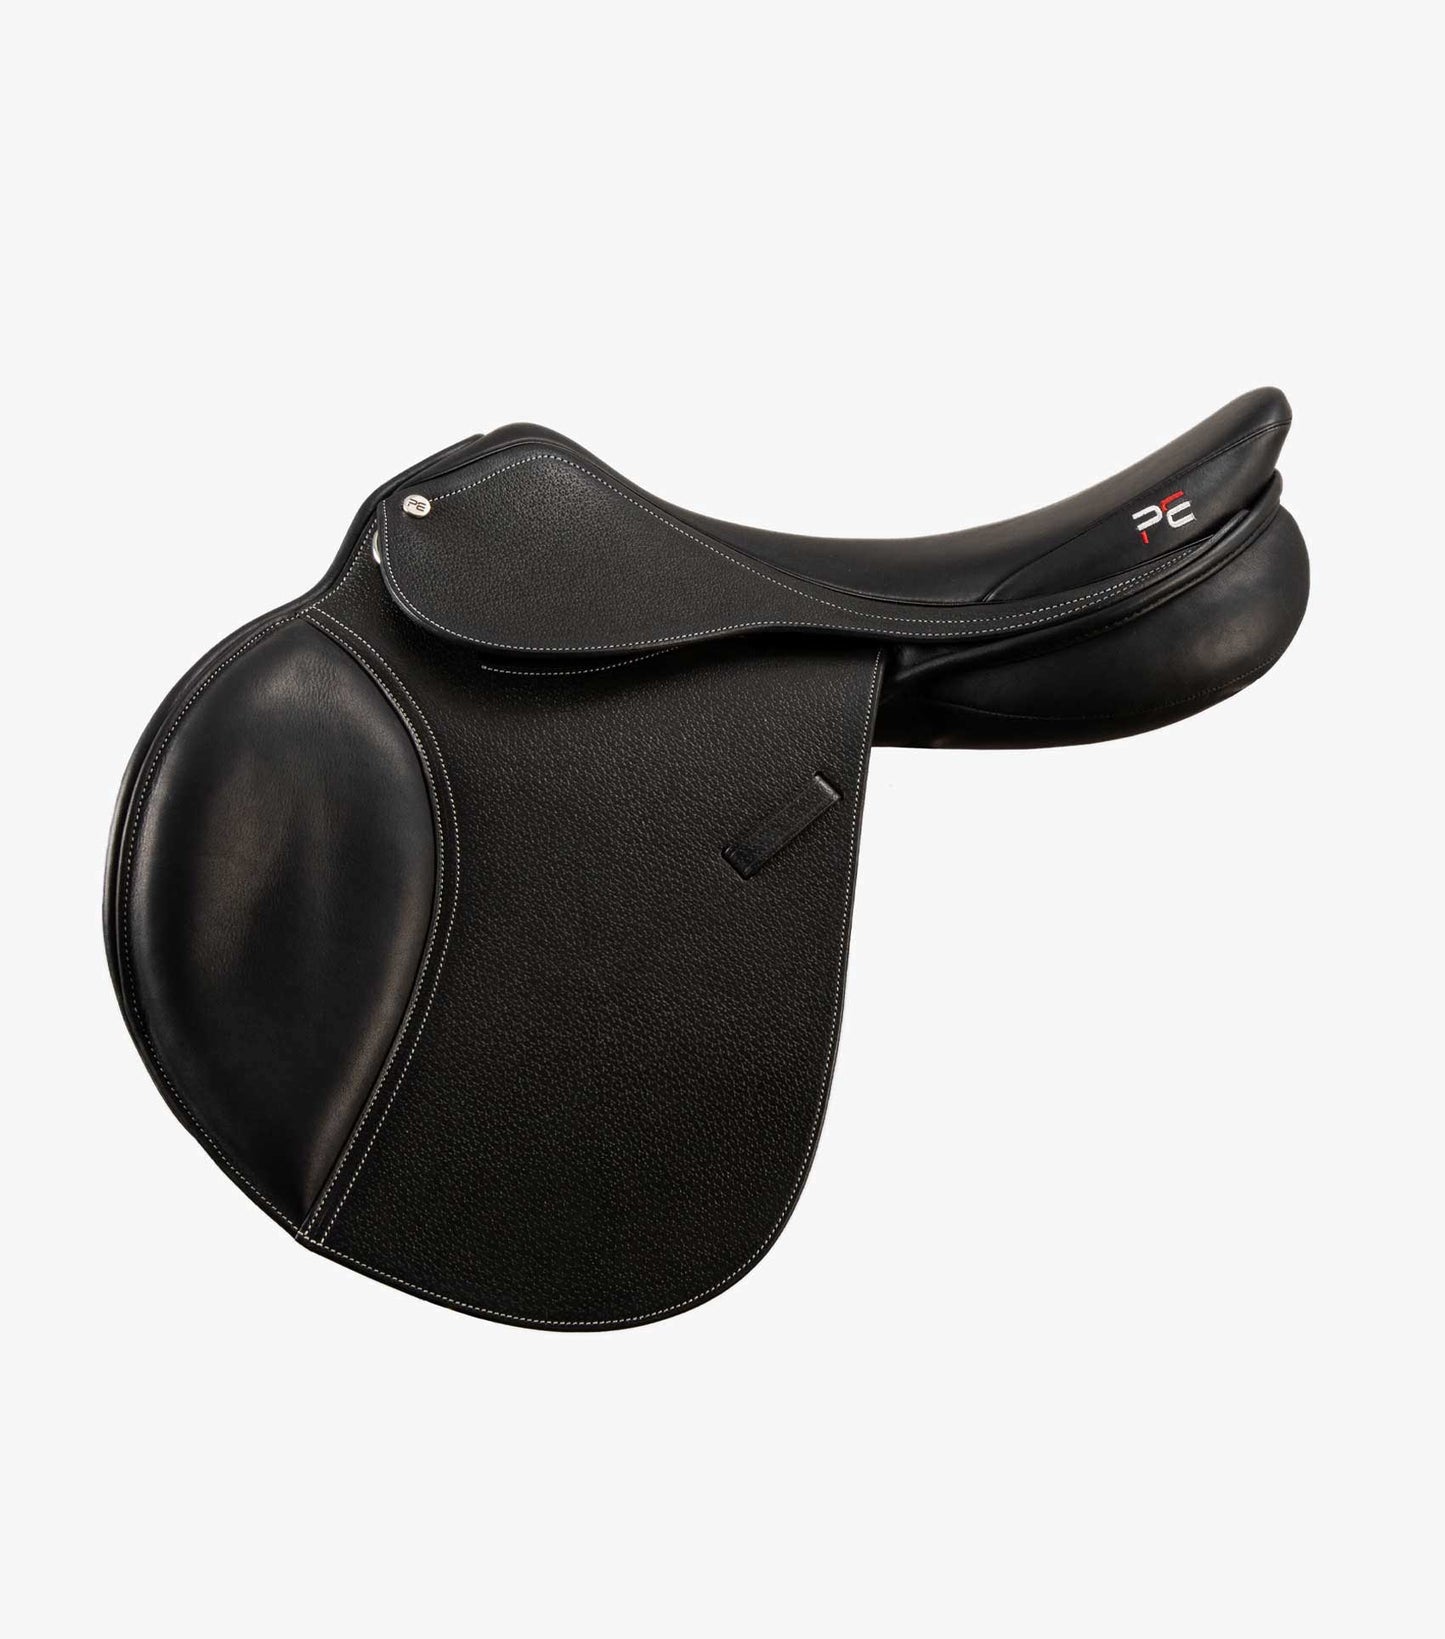 Premier Equine Lyon Leather Close Contact Jump Saddle (Black)